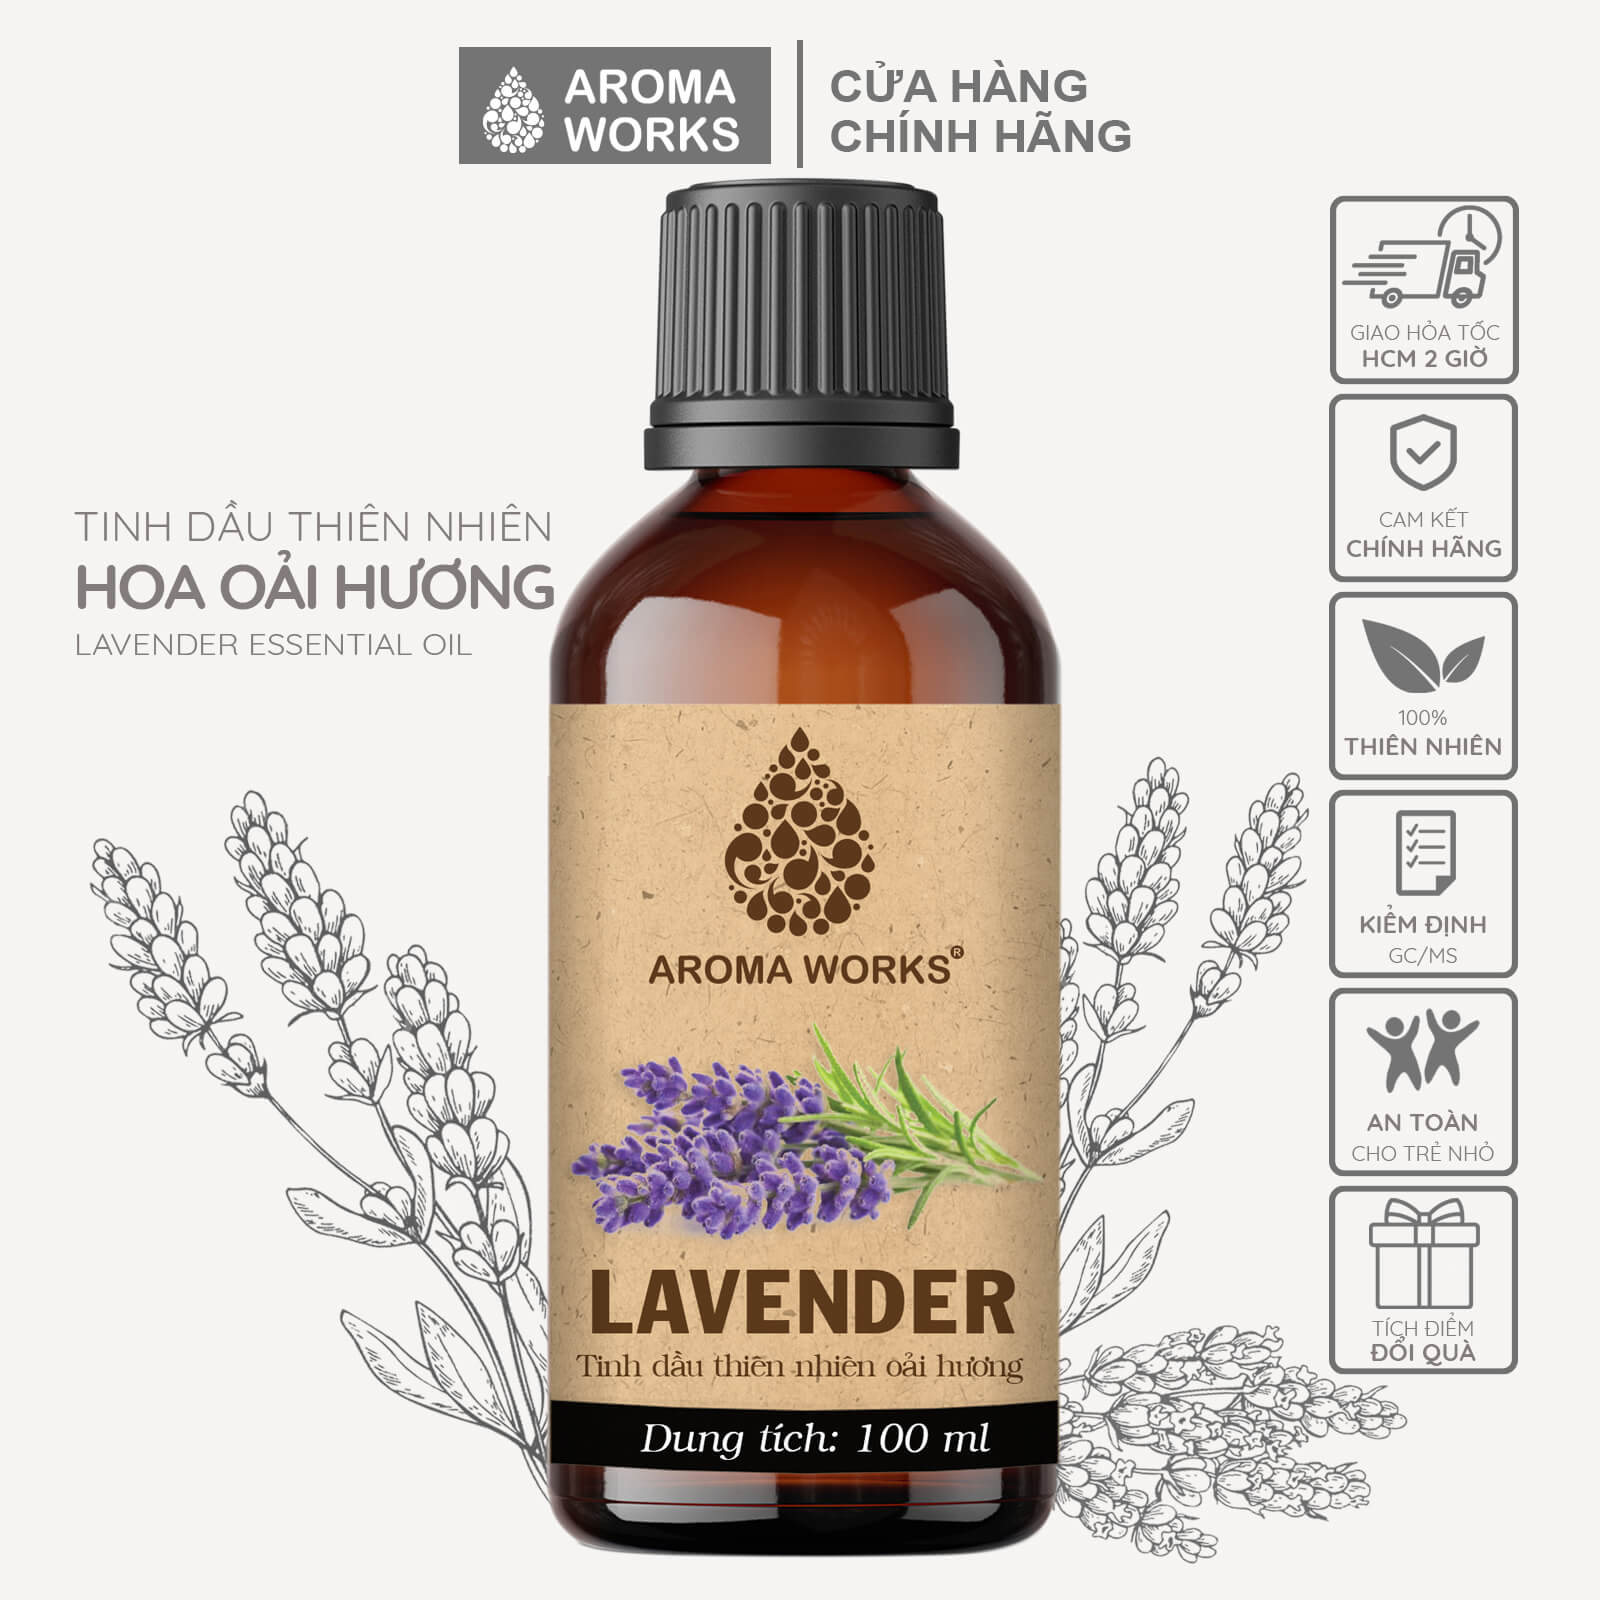 tinh-dau-oai-huong-xong-phong-thu-gian-de-ngu-duoi-muoi-aroma-works-lavender